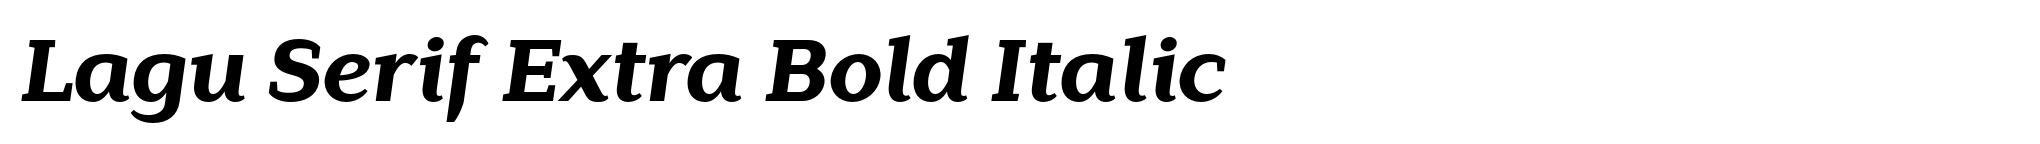 Lagu Serif Extra Bold Italic image